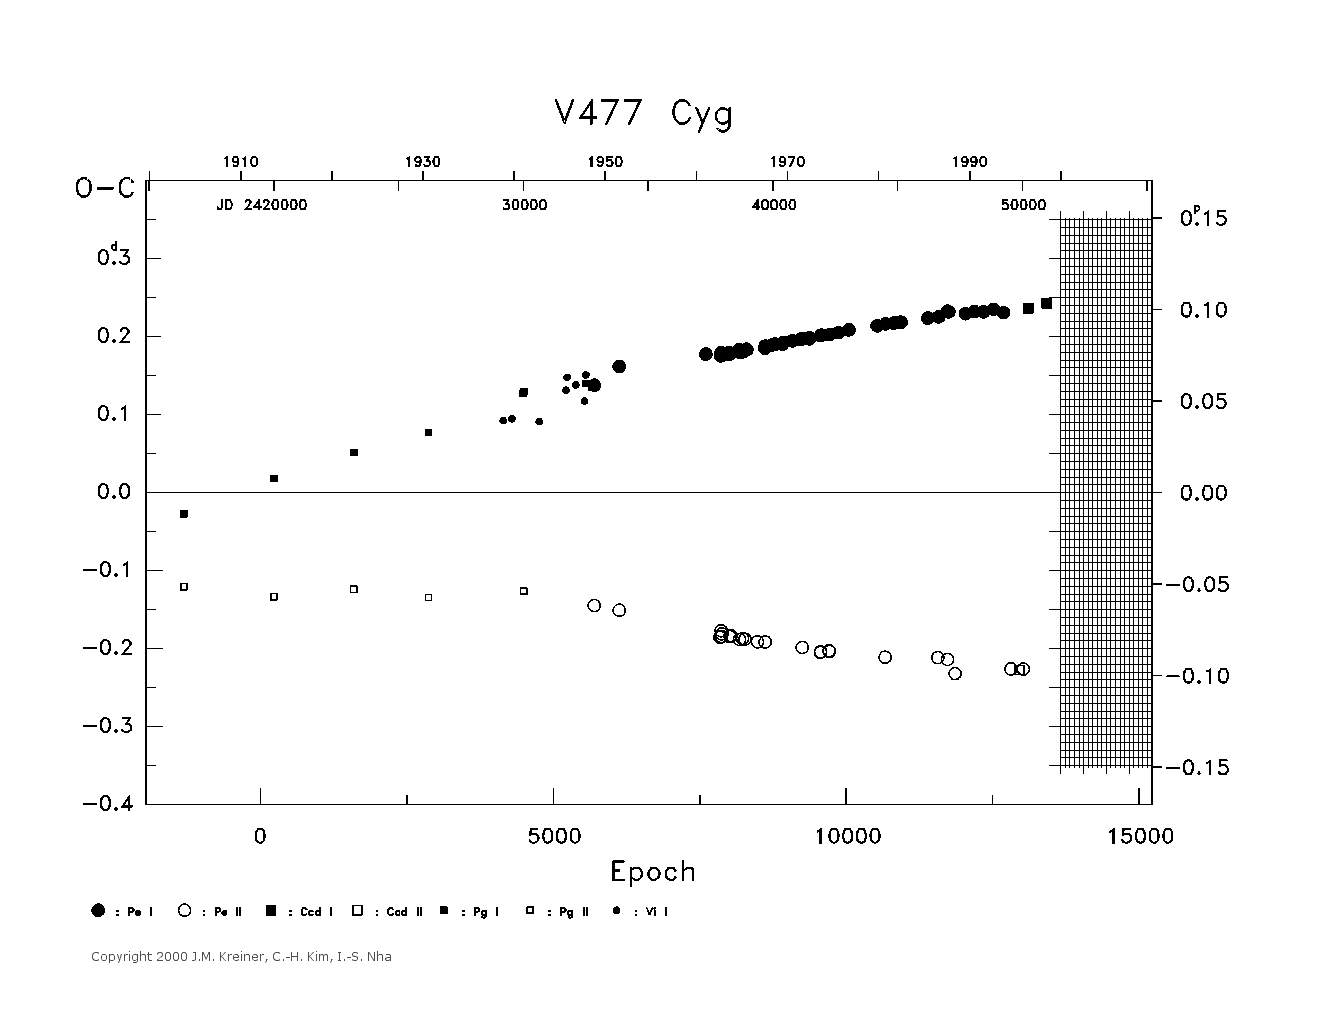 [IMAGE: large V477 CYG O-C diagram]